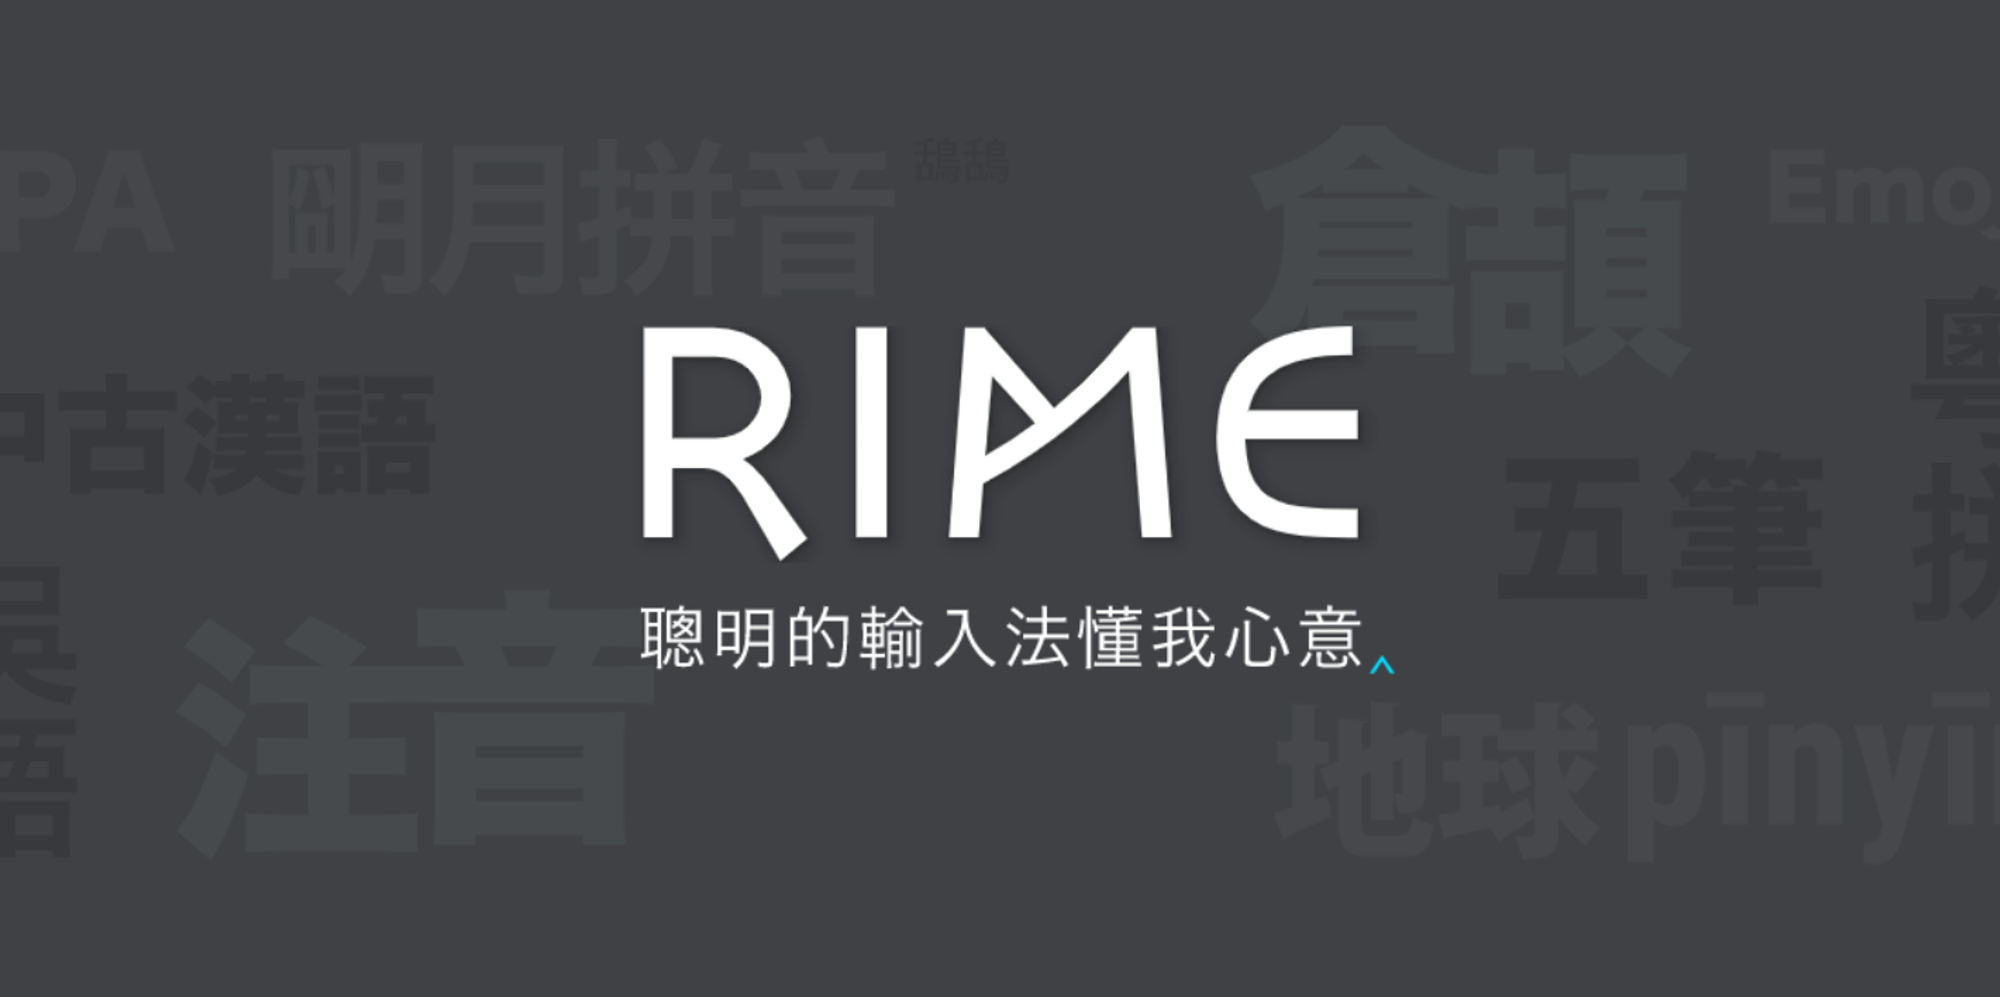 自由输入法RIME简明配置指南 - 少数派